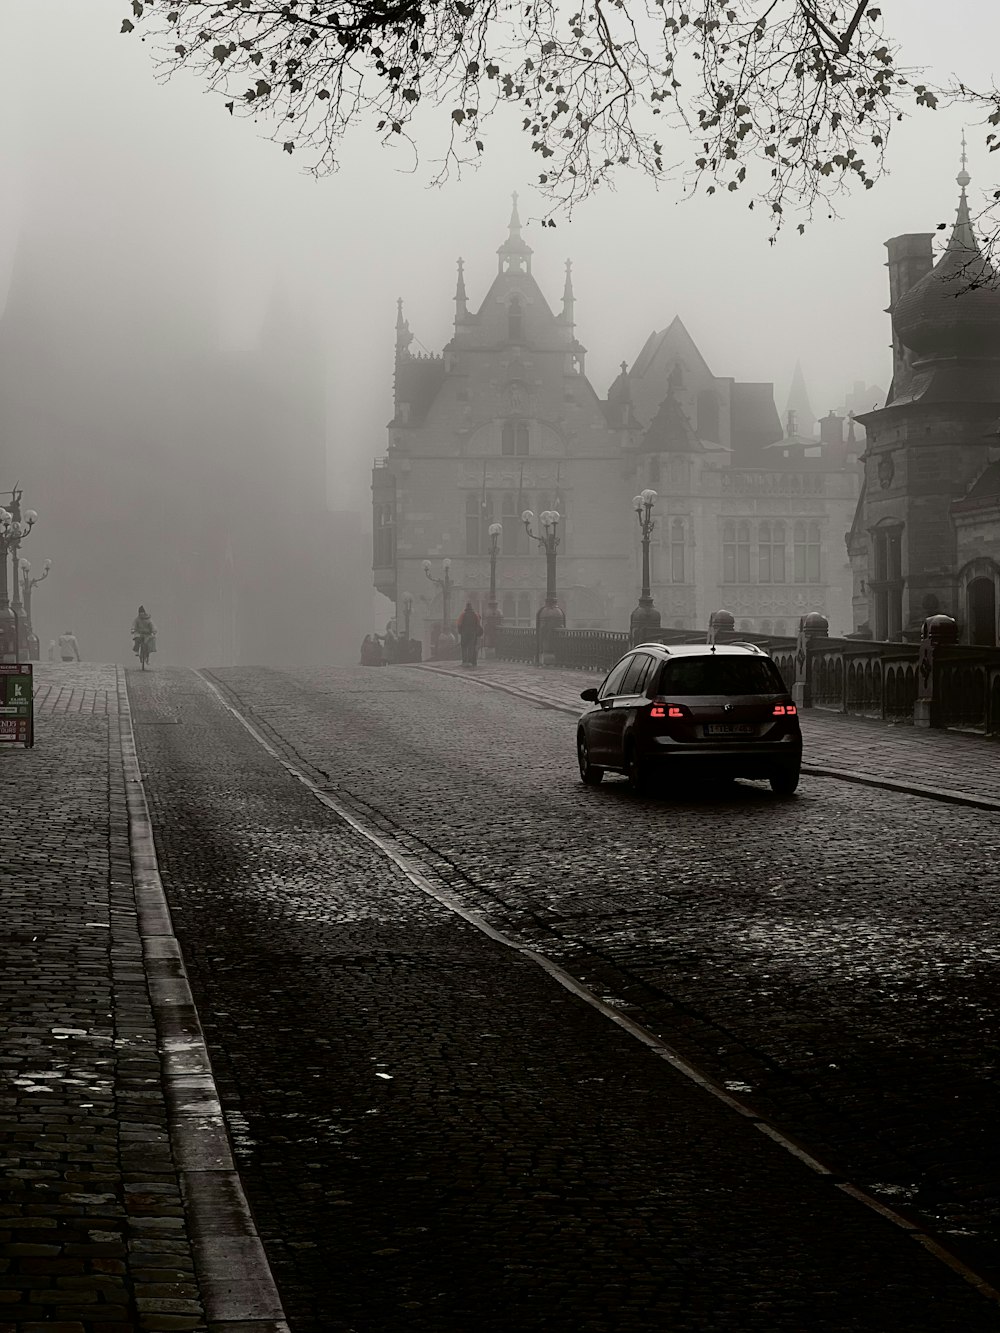 a car is driving down a foggy street